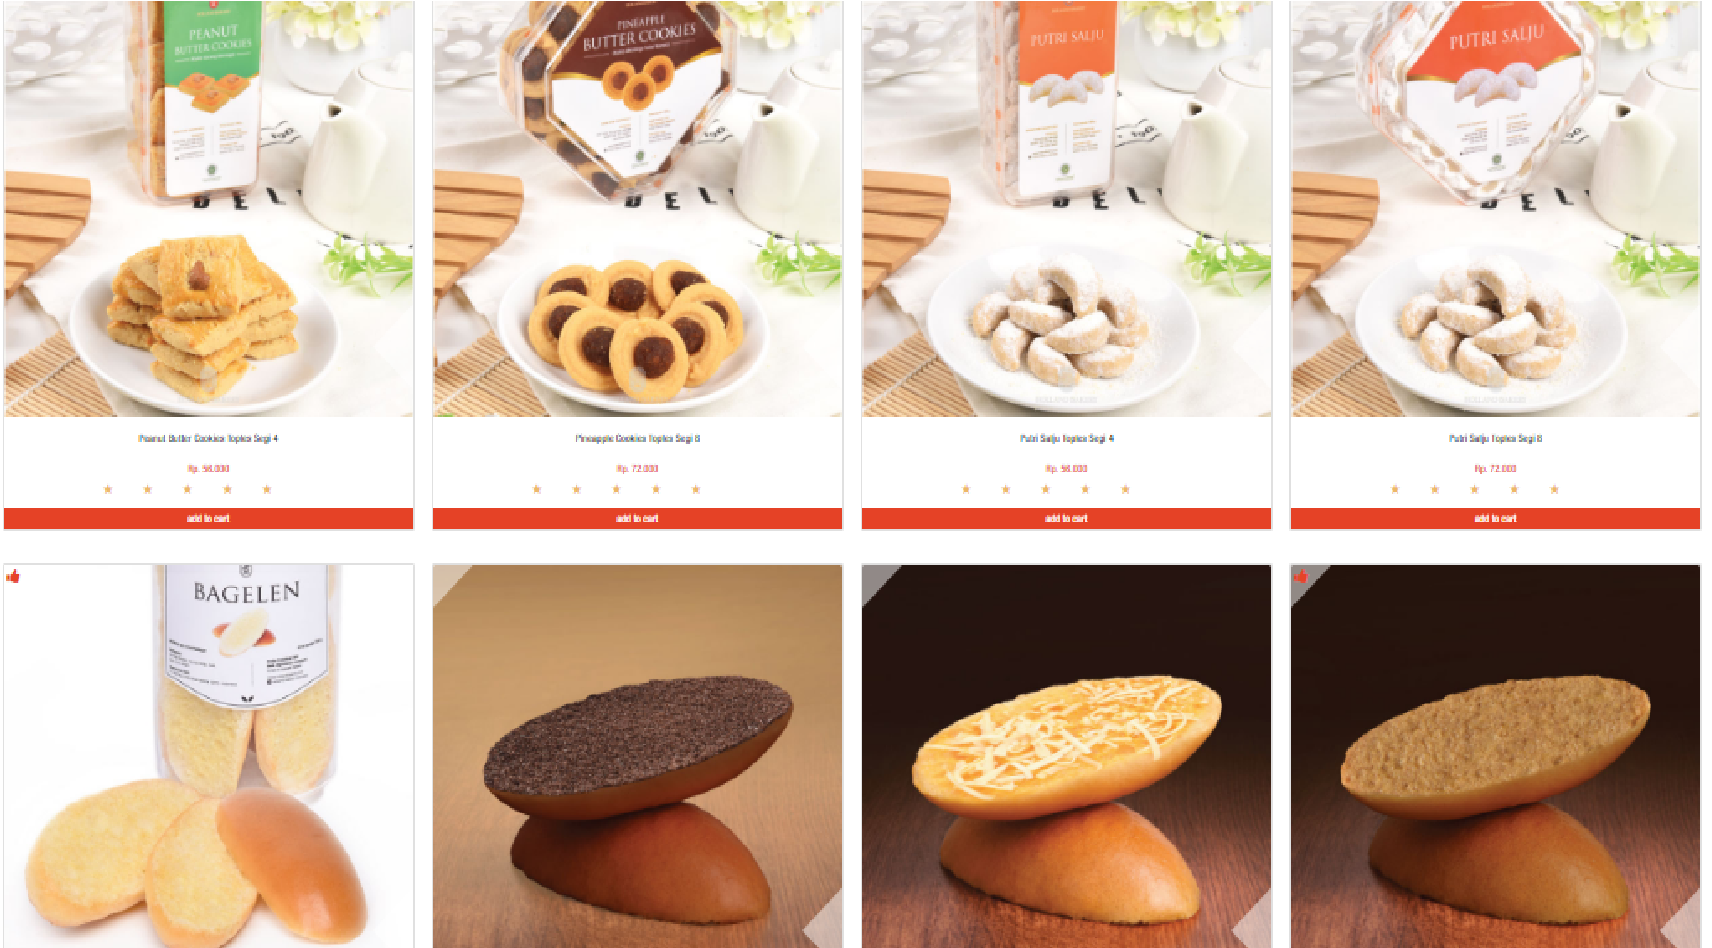 Daftar Harga Holland Bakery Terbaru 2019 Harian Nusantara